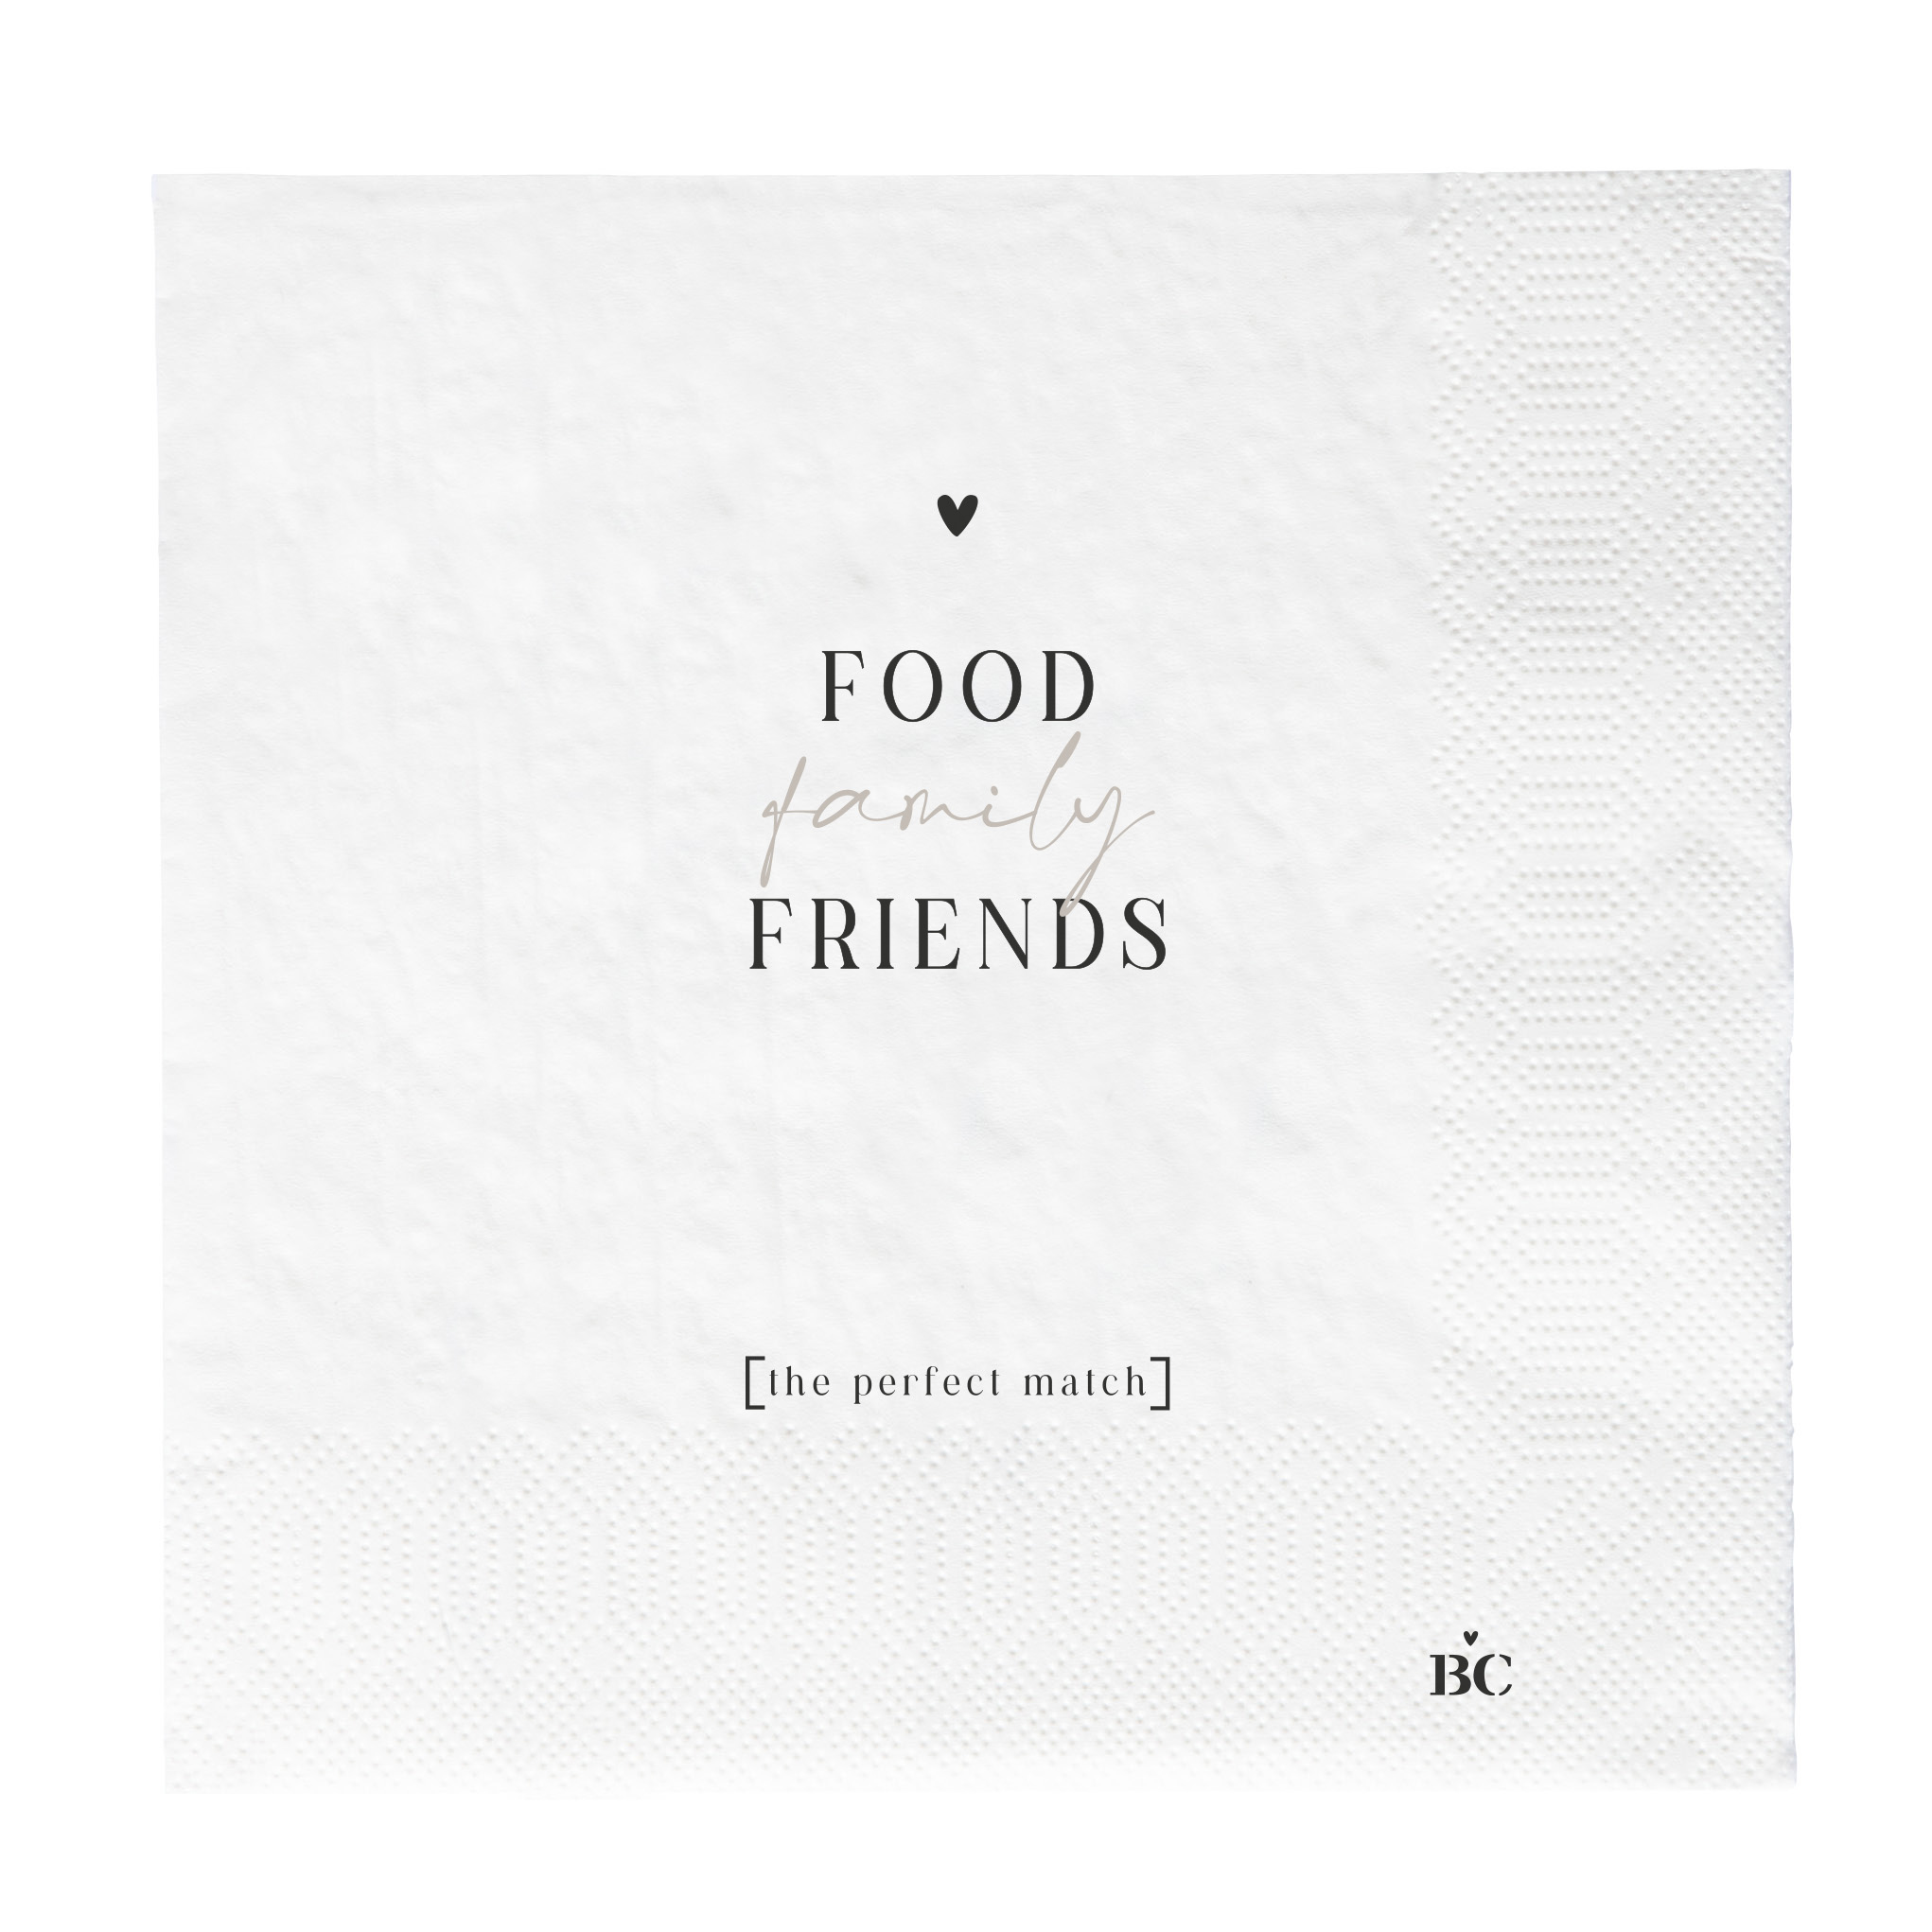 Papierservietten "Food, family, friends - the perfect match" (groß) (schwarz)